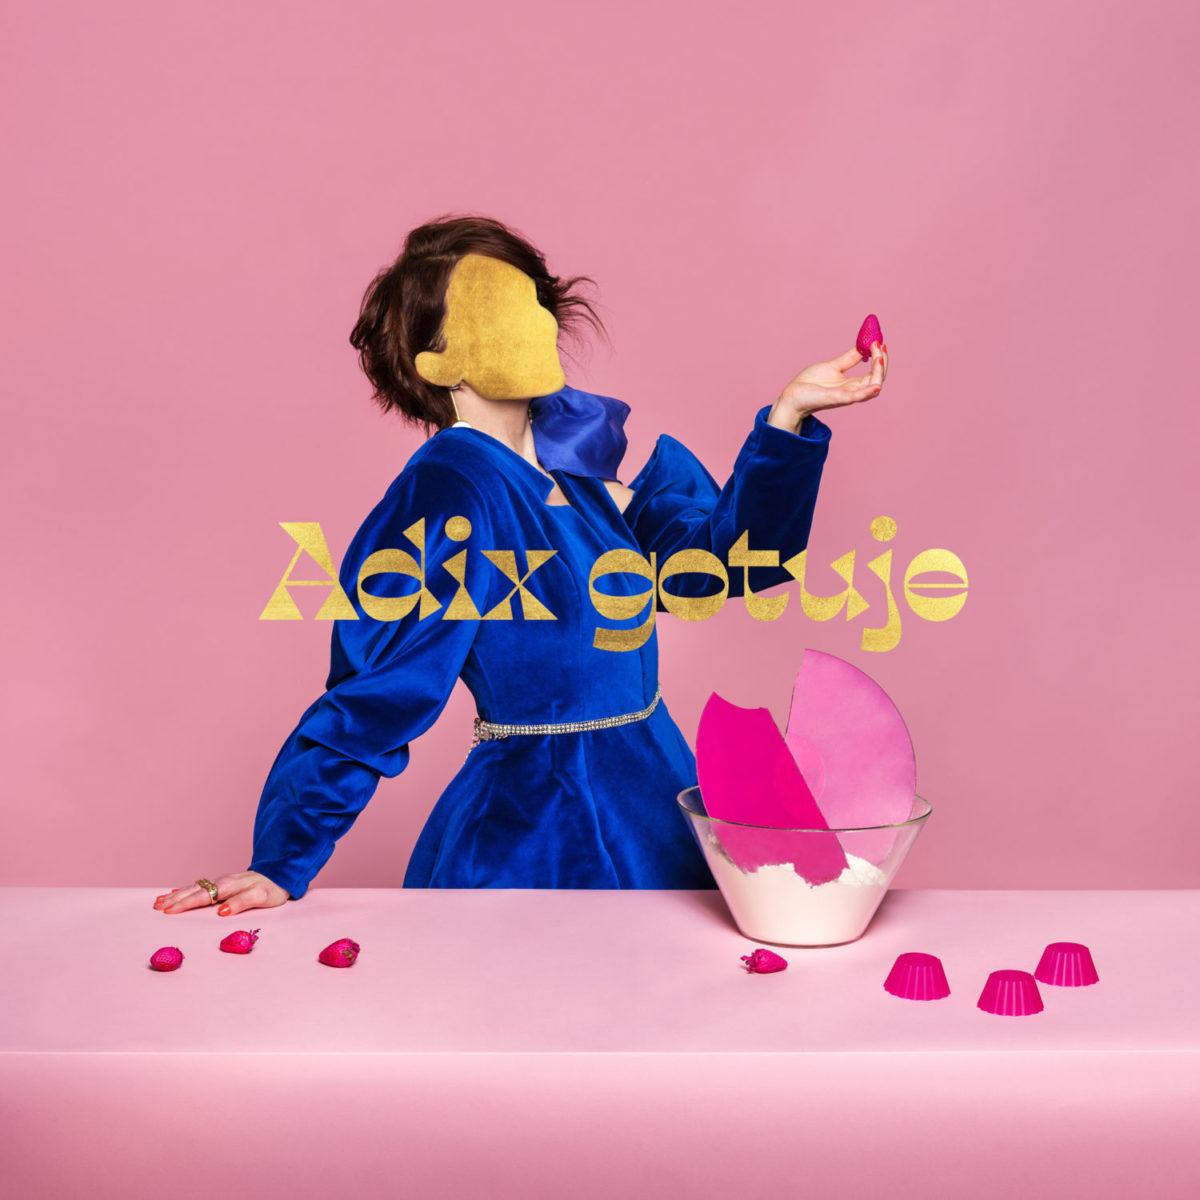 Sprawdź „Na słodko” - debiutancki singiel raperki Adix. Tylko #kimjestadix ?